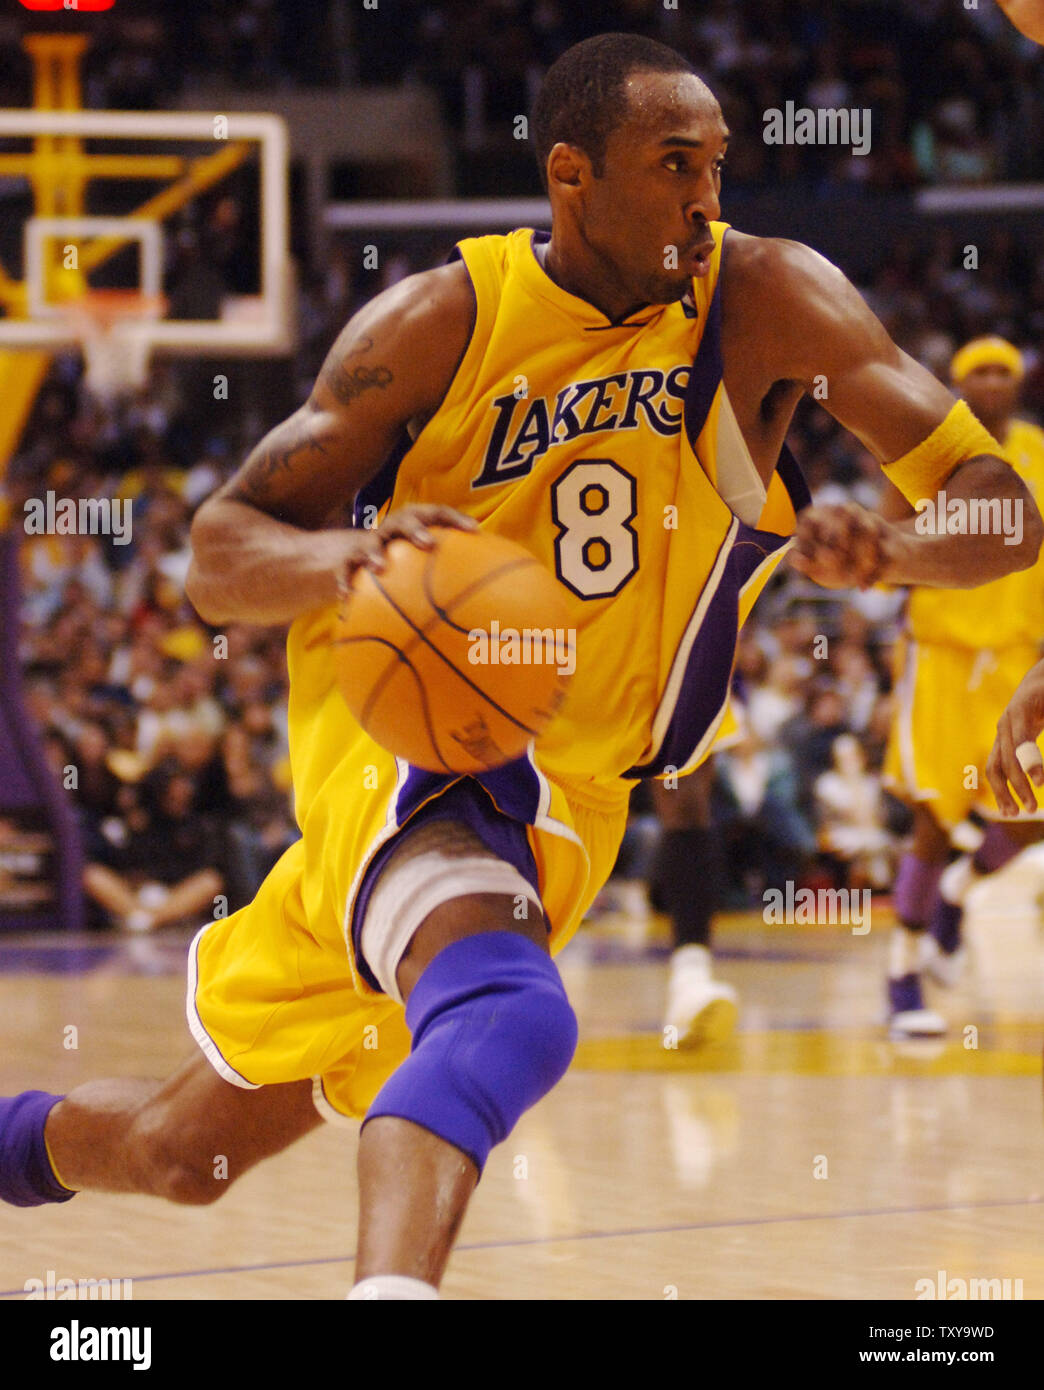 Kobe Bryant Breaks Scoring Record In His Final NBA Game